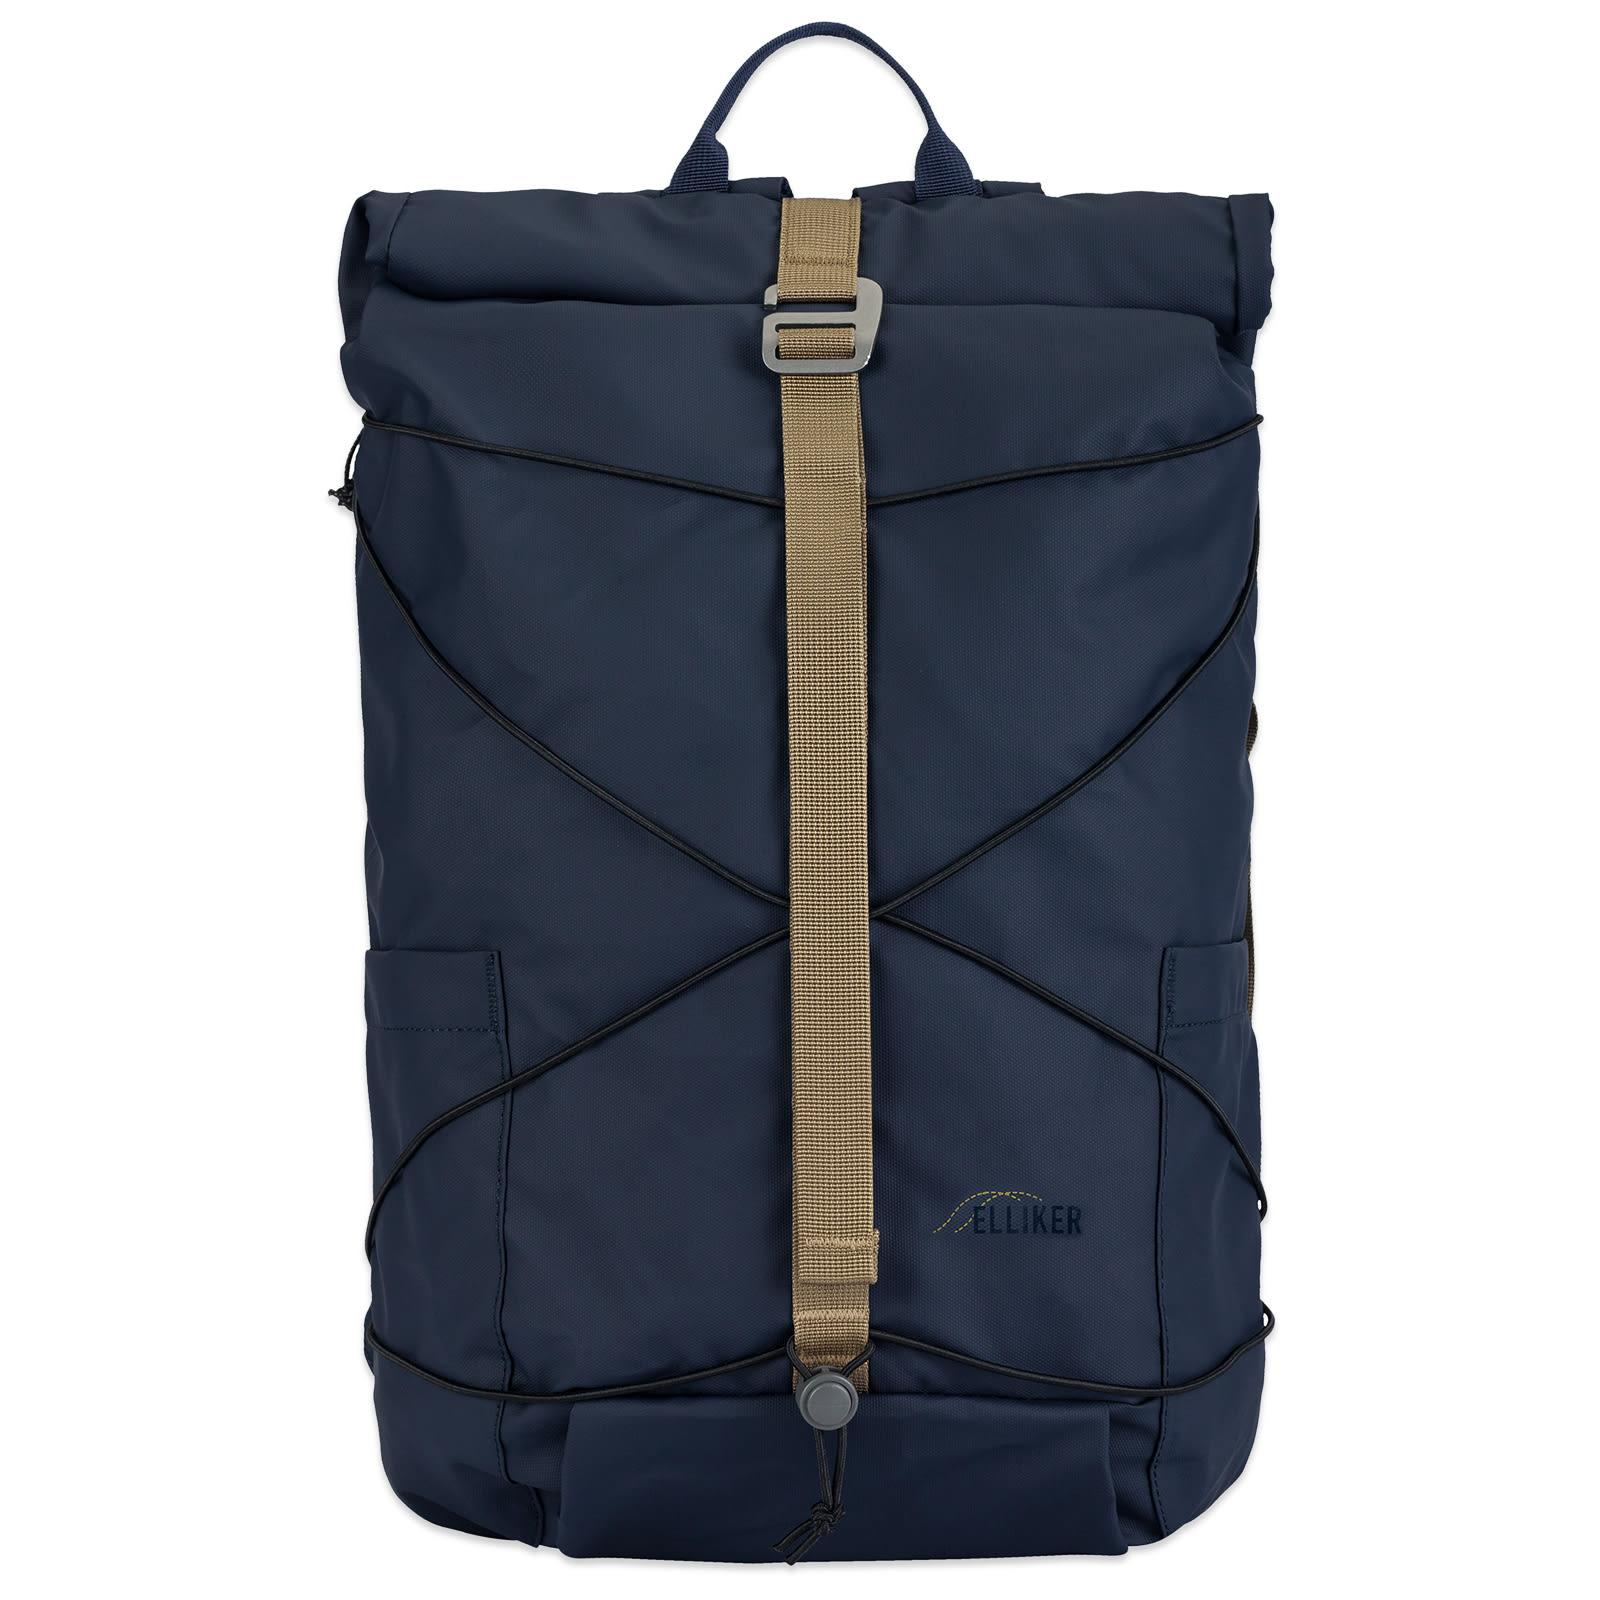 Elliker Dayle Rolltop Backpack in Blue | Lyst